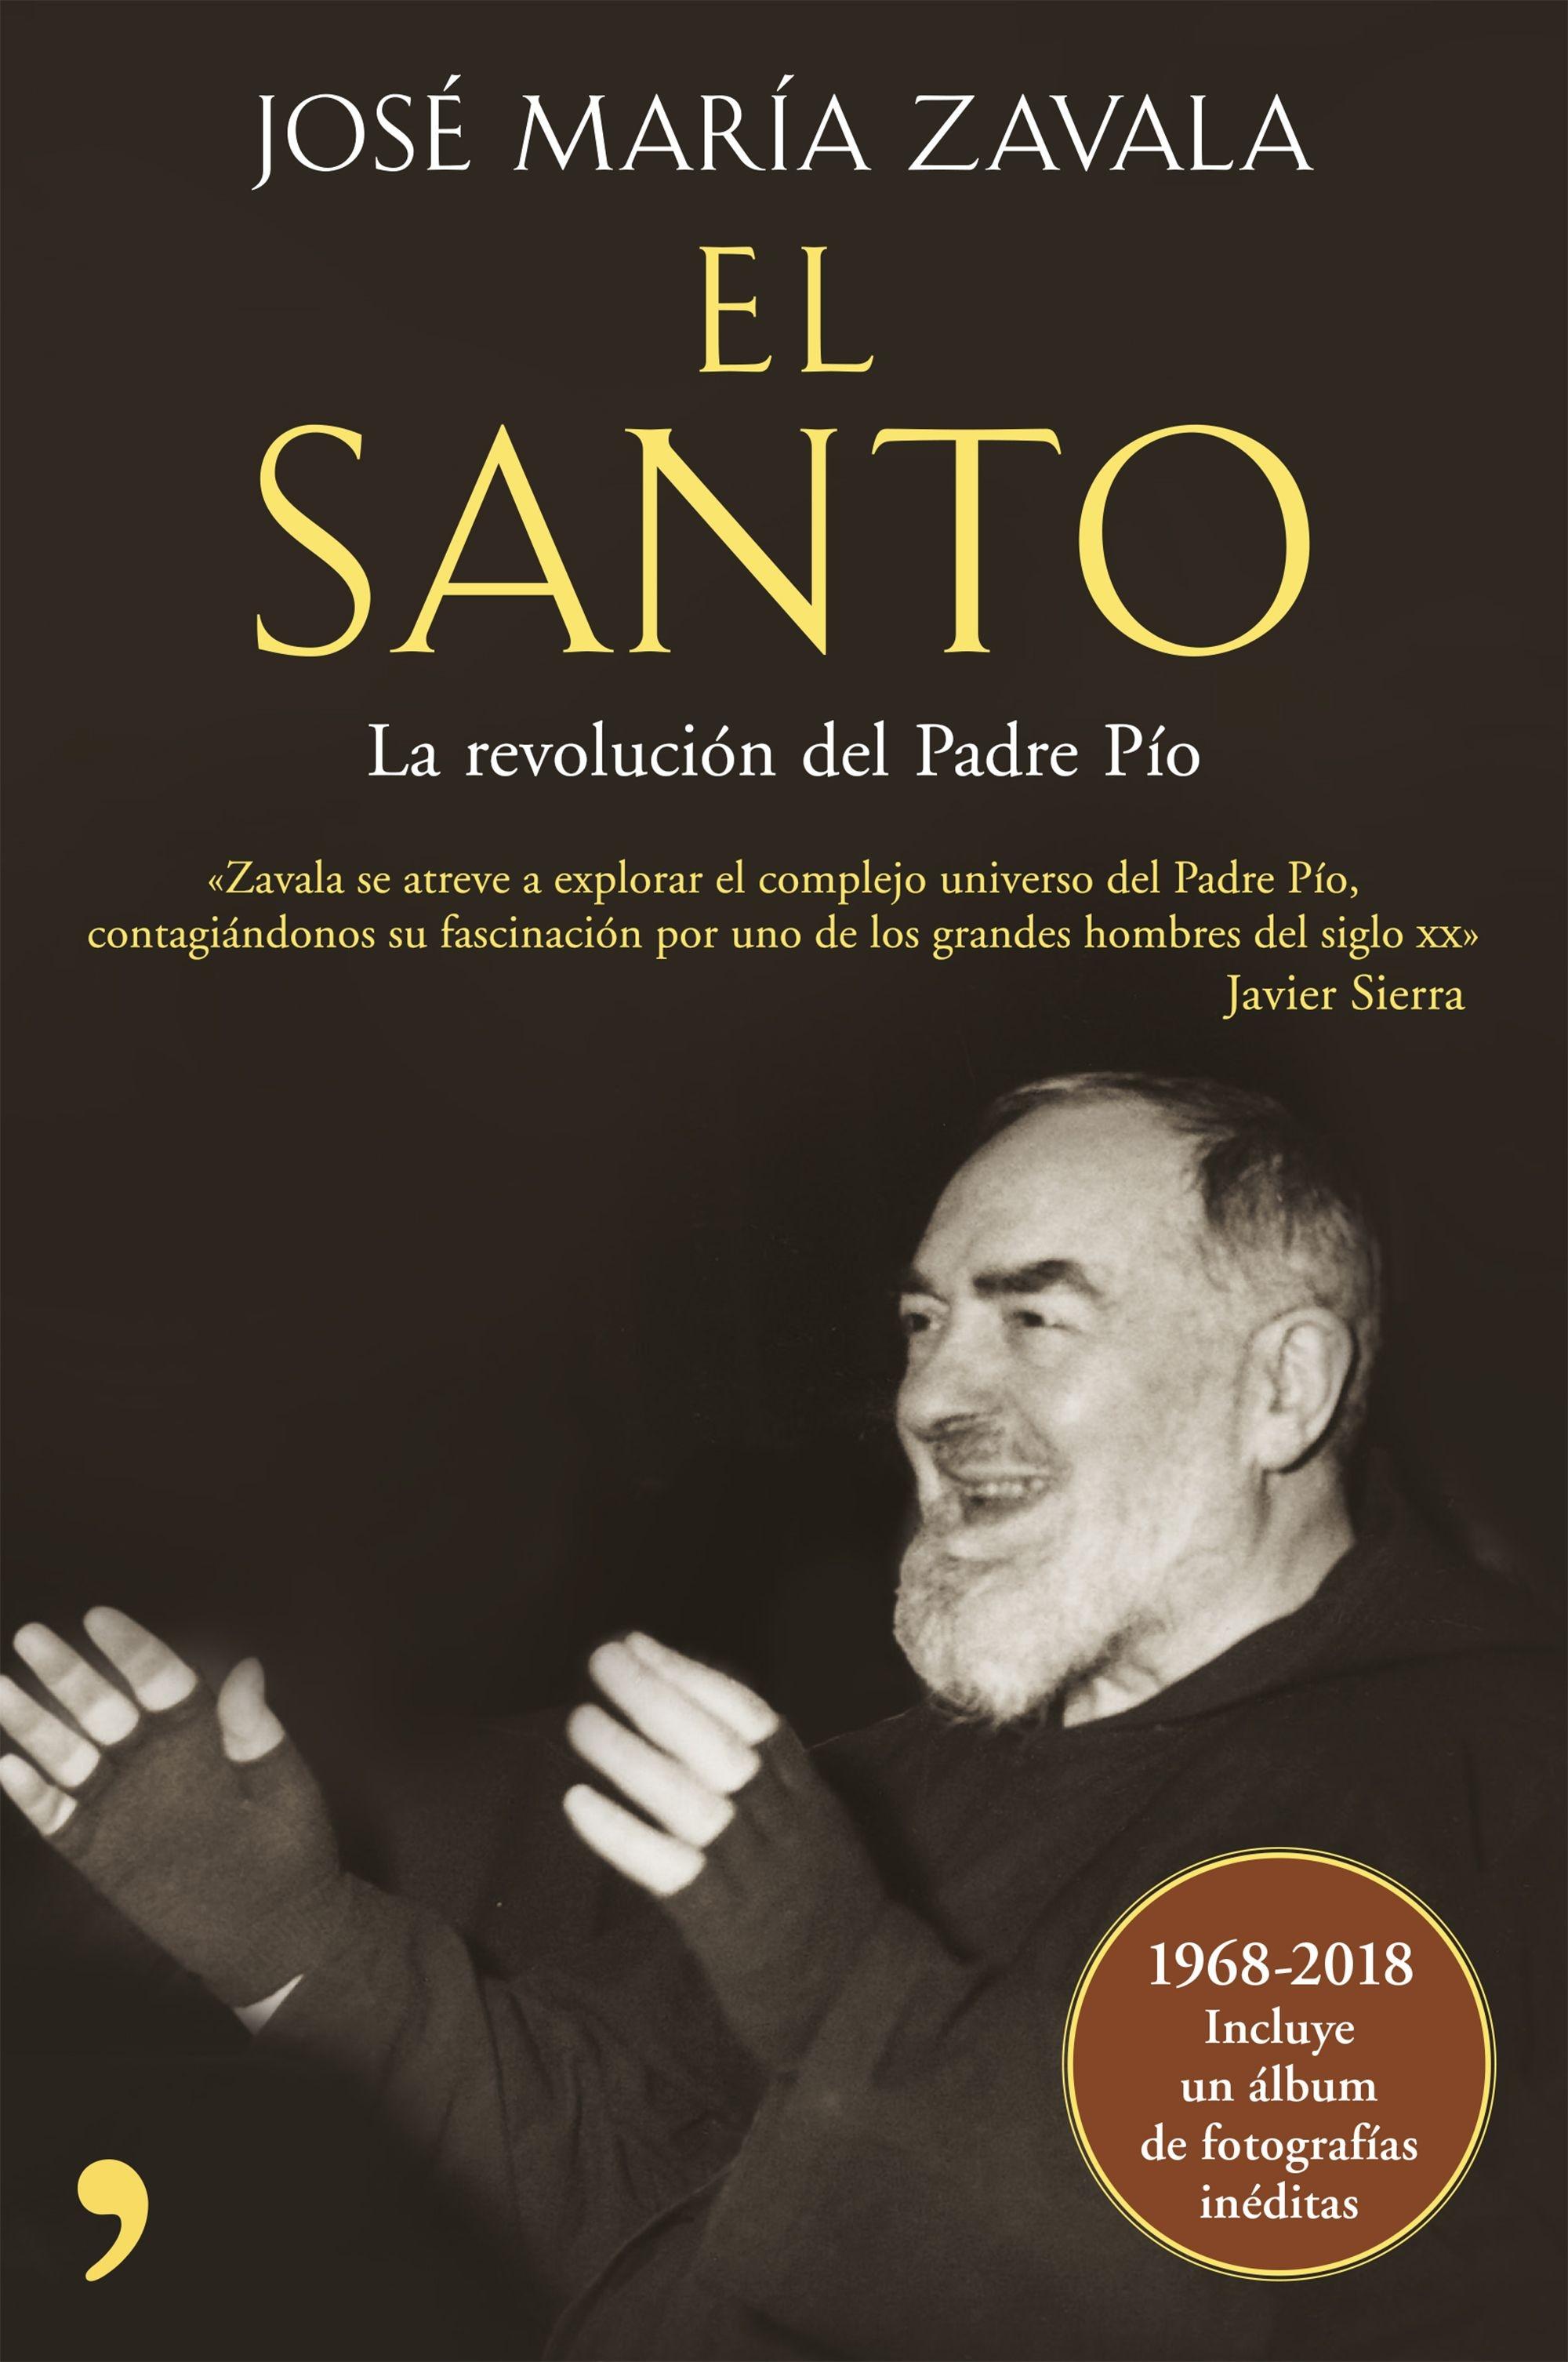 El Santo "La Revolución del Padre Pío"